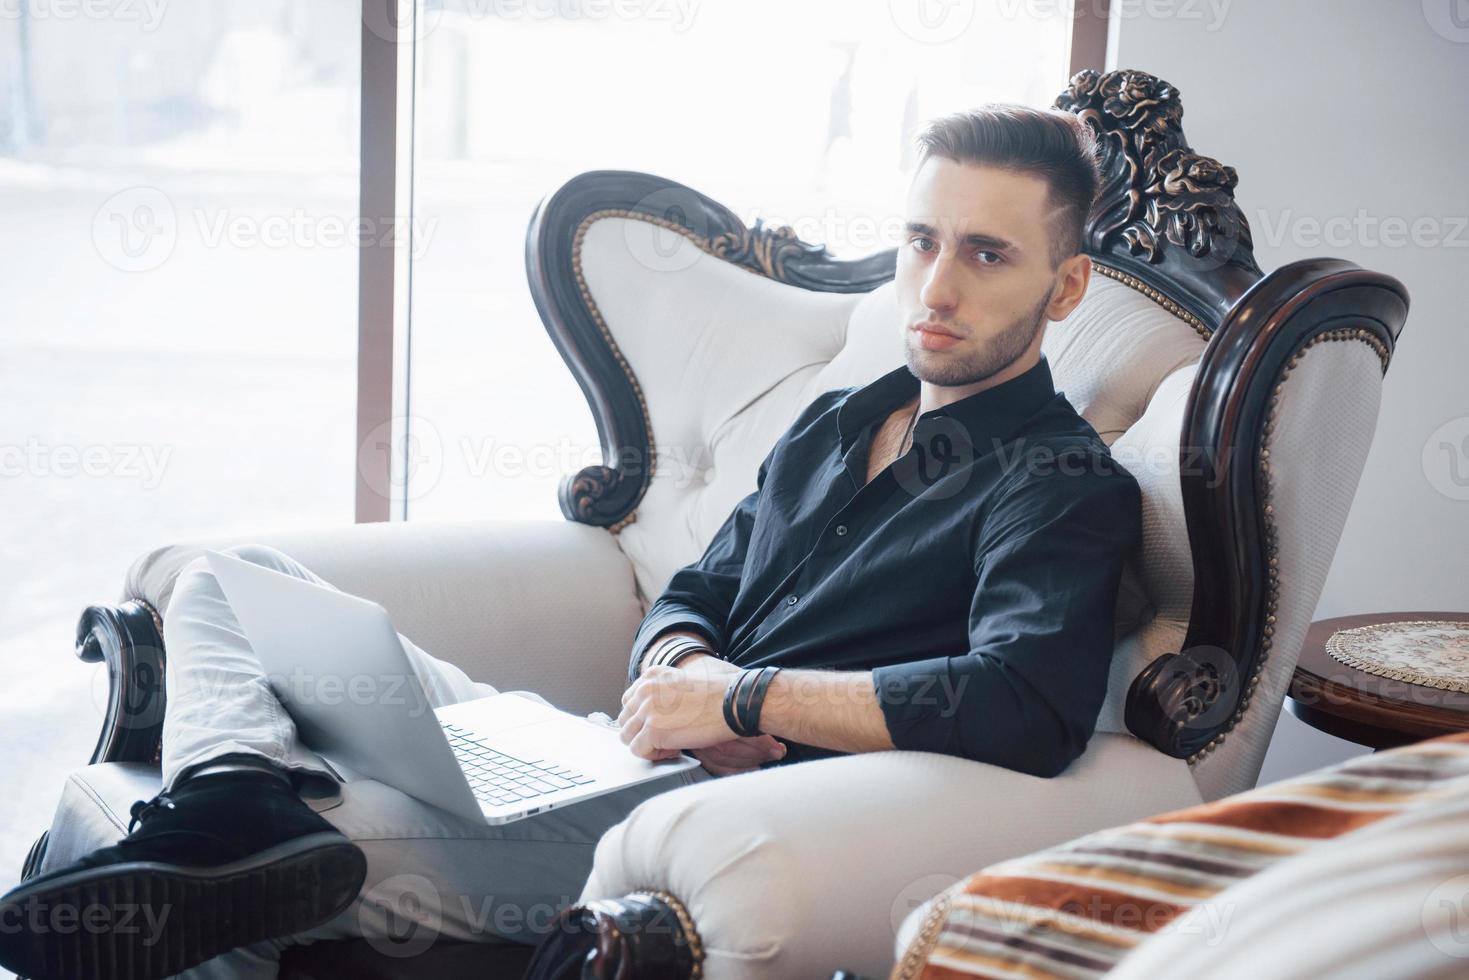 giovane uomo d'affari che lavora in un moderno ufficio loft. uomo che indossa una camicia bianca e usa un laptop contemporaneo. sfondo di finestre panoramiche foto